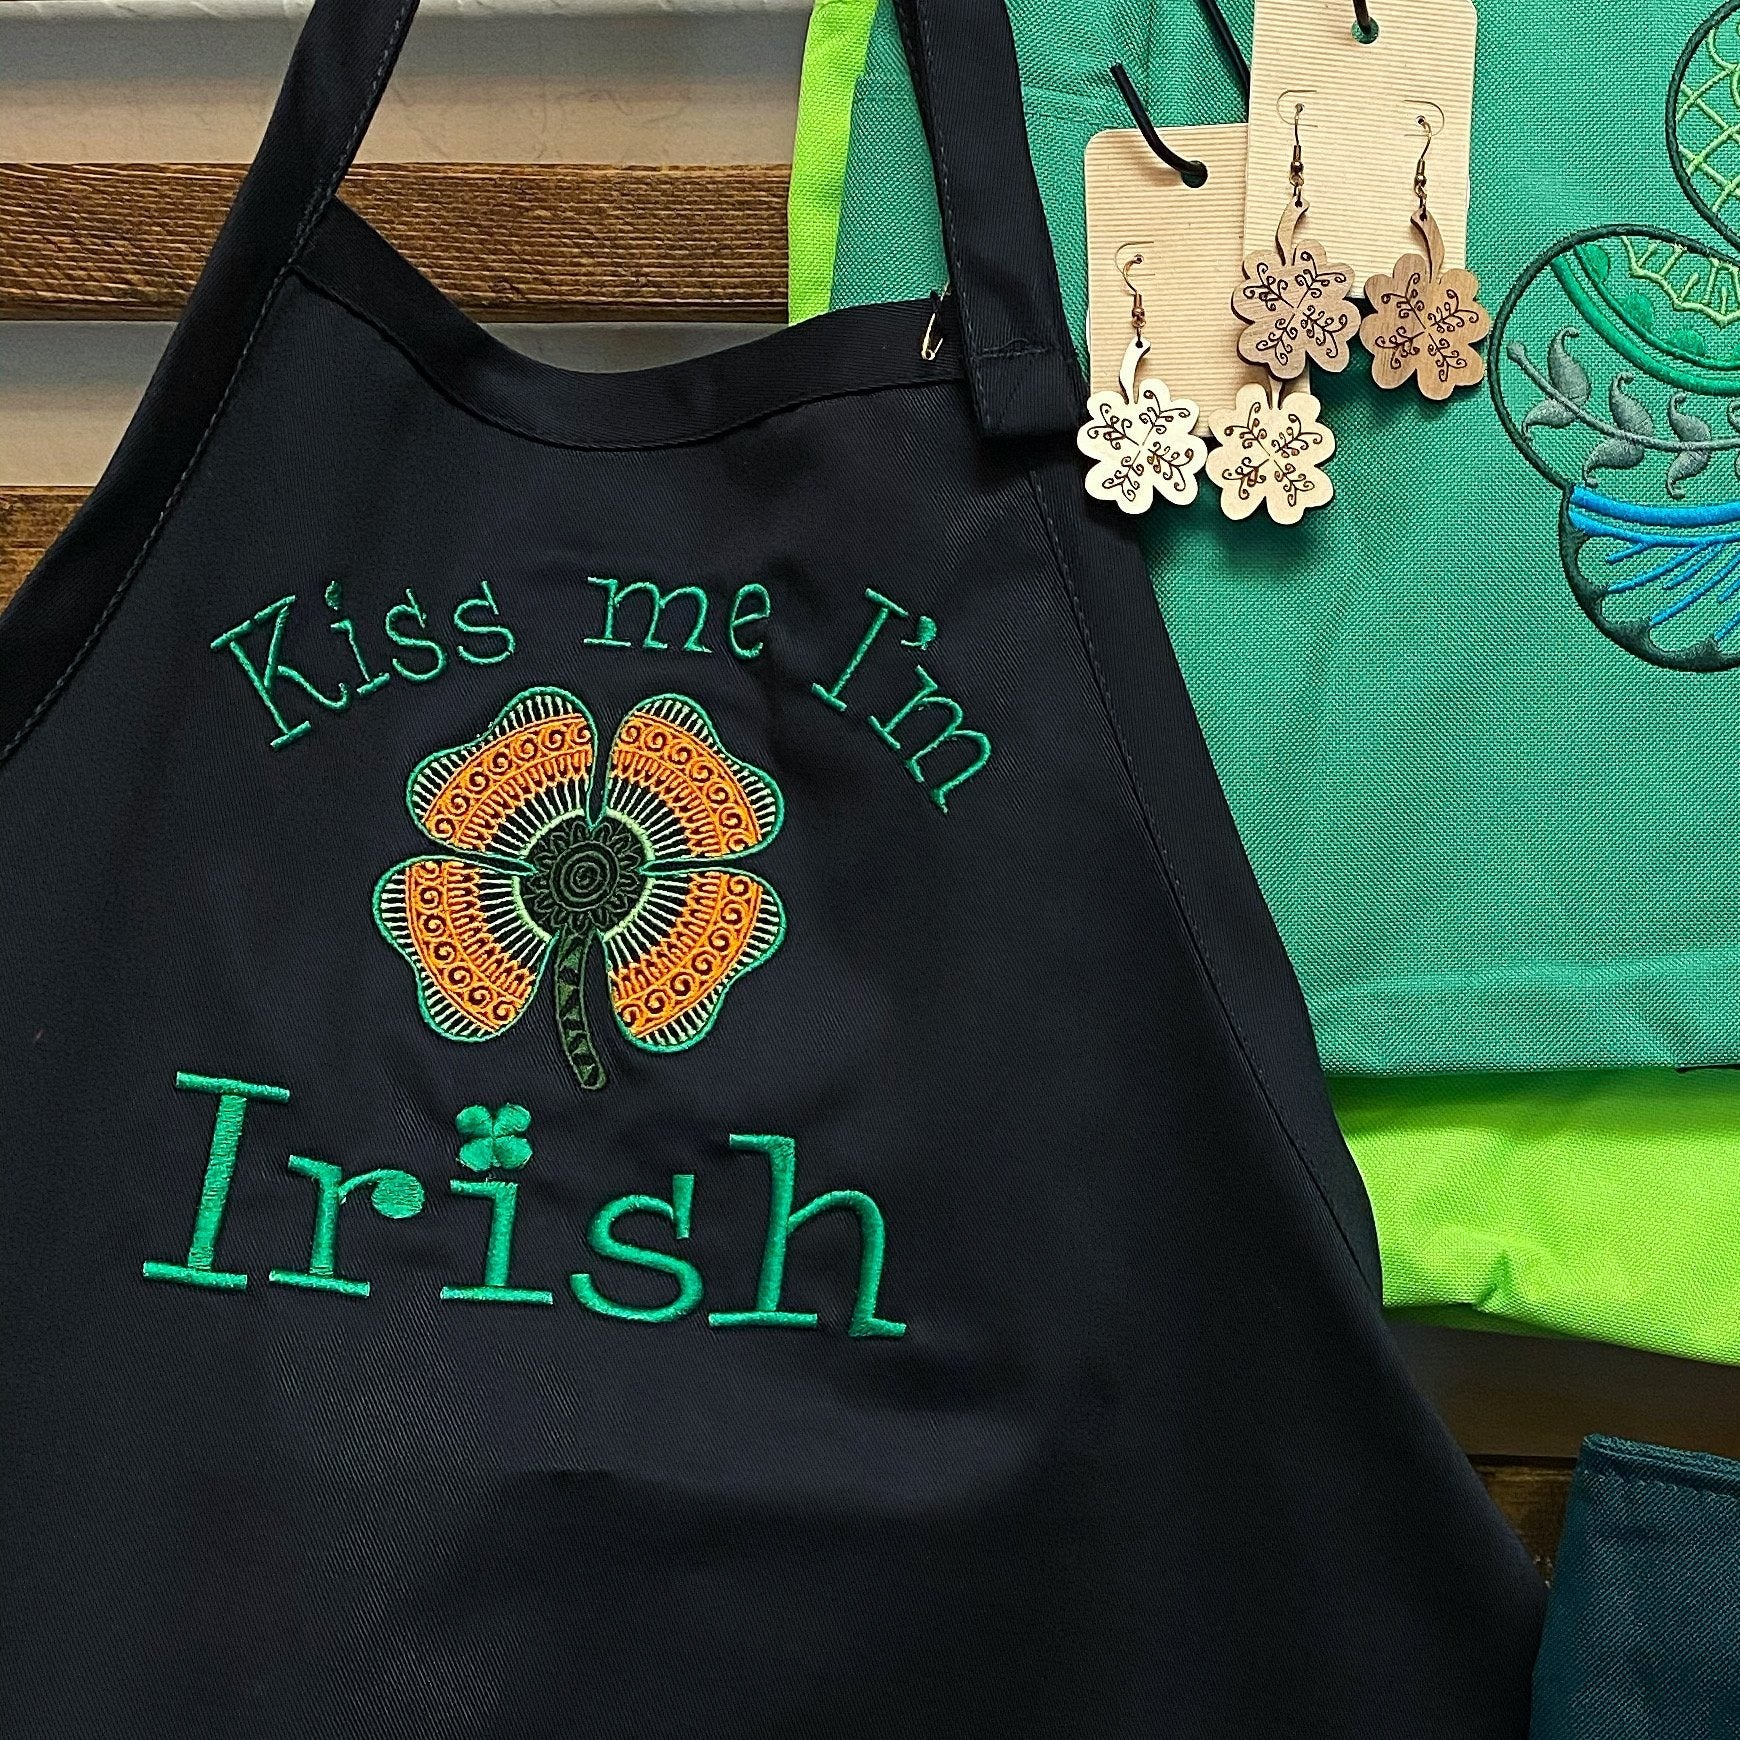 Kiss me I'm Irish Cakesicle sticks – Crafty Cake Shop